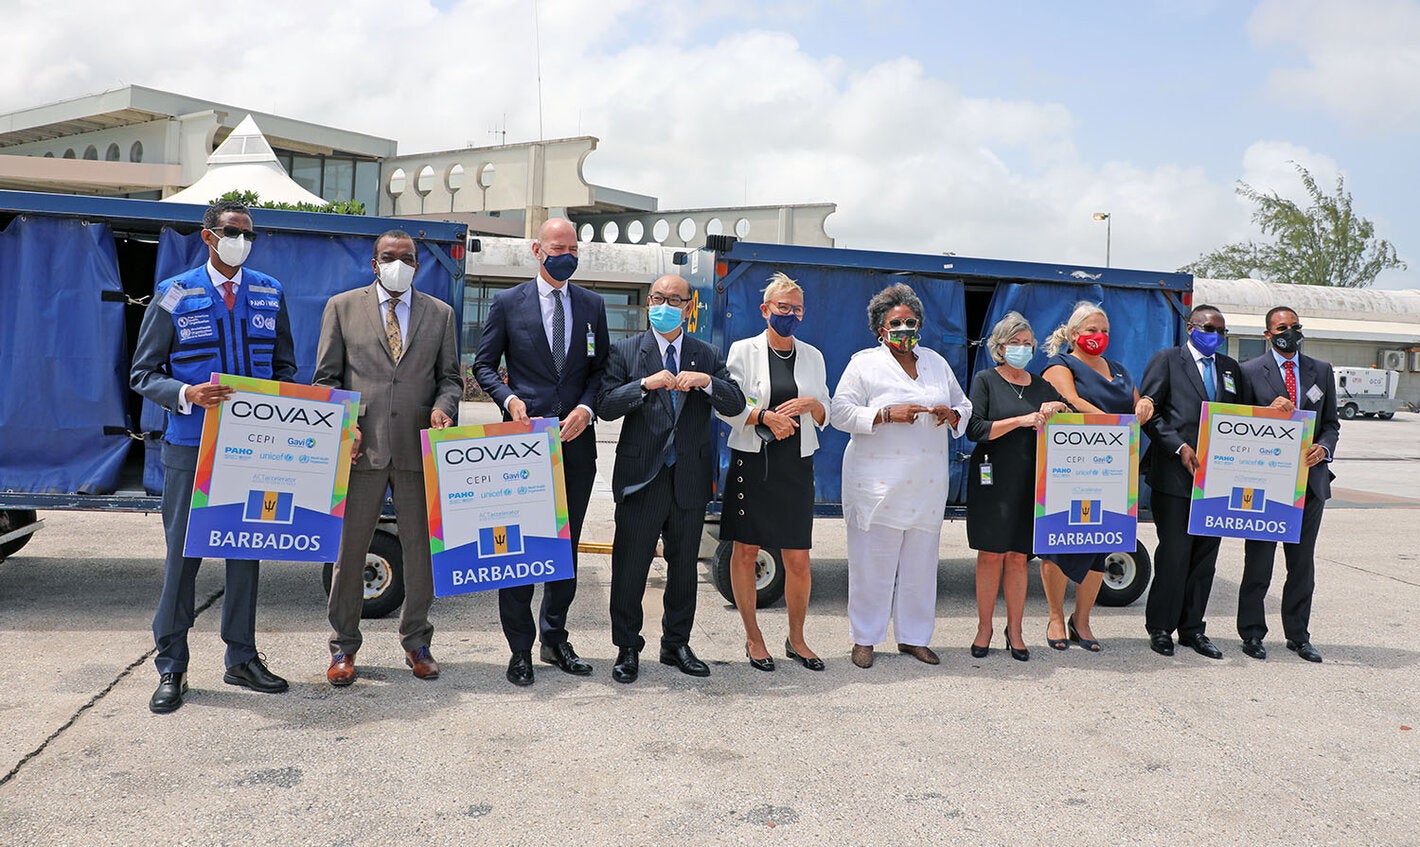 Officials in Barbados receiving COVID vaccines